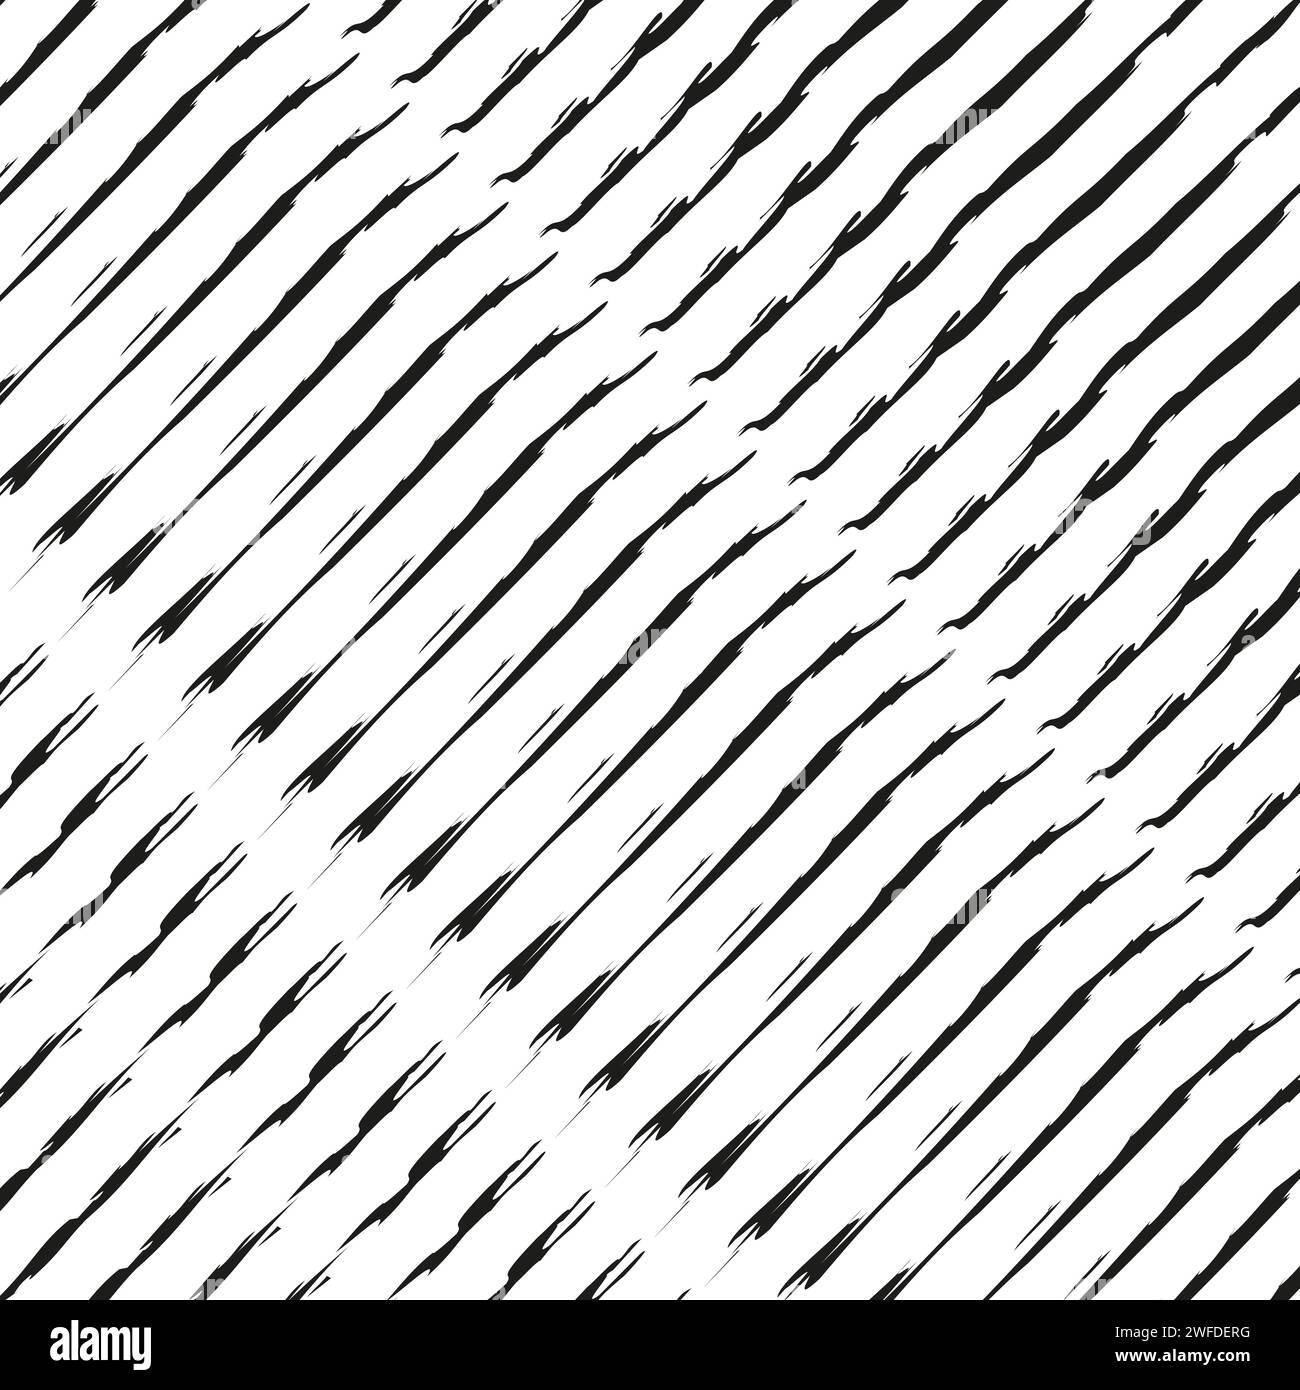 Schwarzweiß, nahtlos wiederholbares geometrisches Muster in Schwarzweiß. Vektorabbildung. EPS 10. Rohbild. Stock Vektor